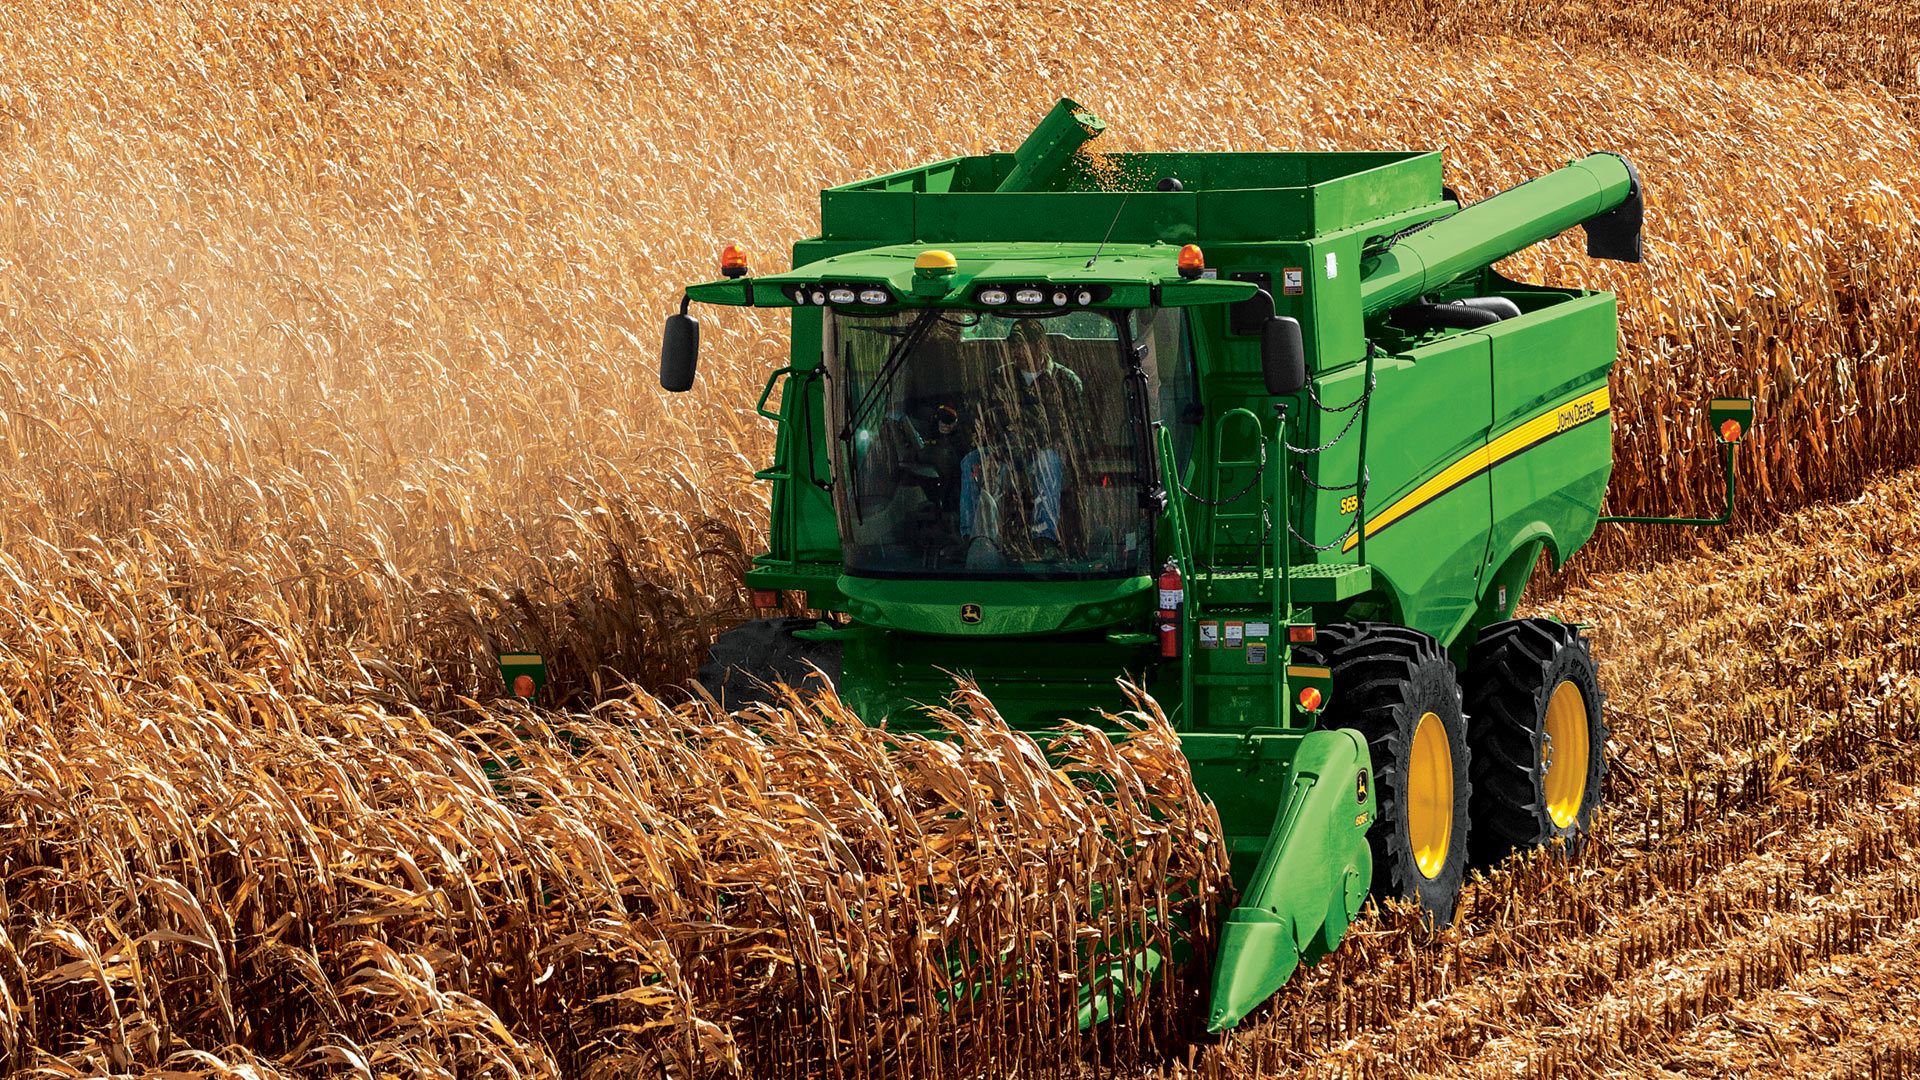 Twitter Fan #Harvest18 Media Gallery: John Deere Harvest Equipment